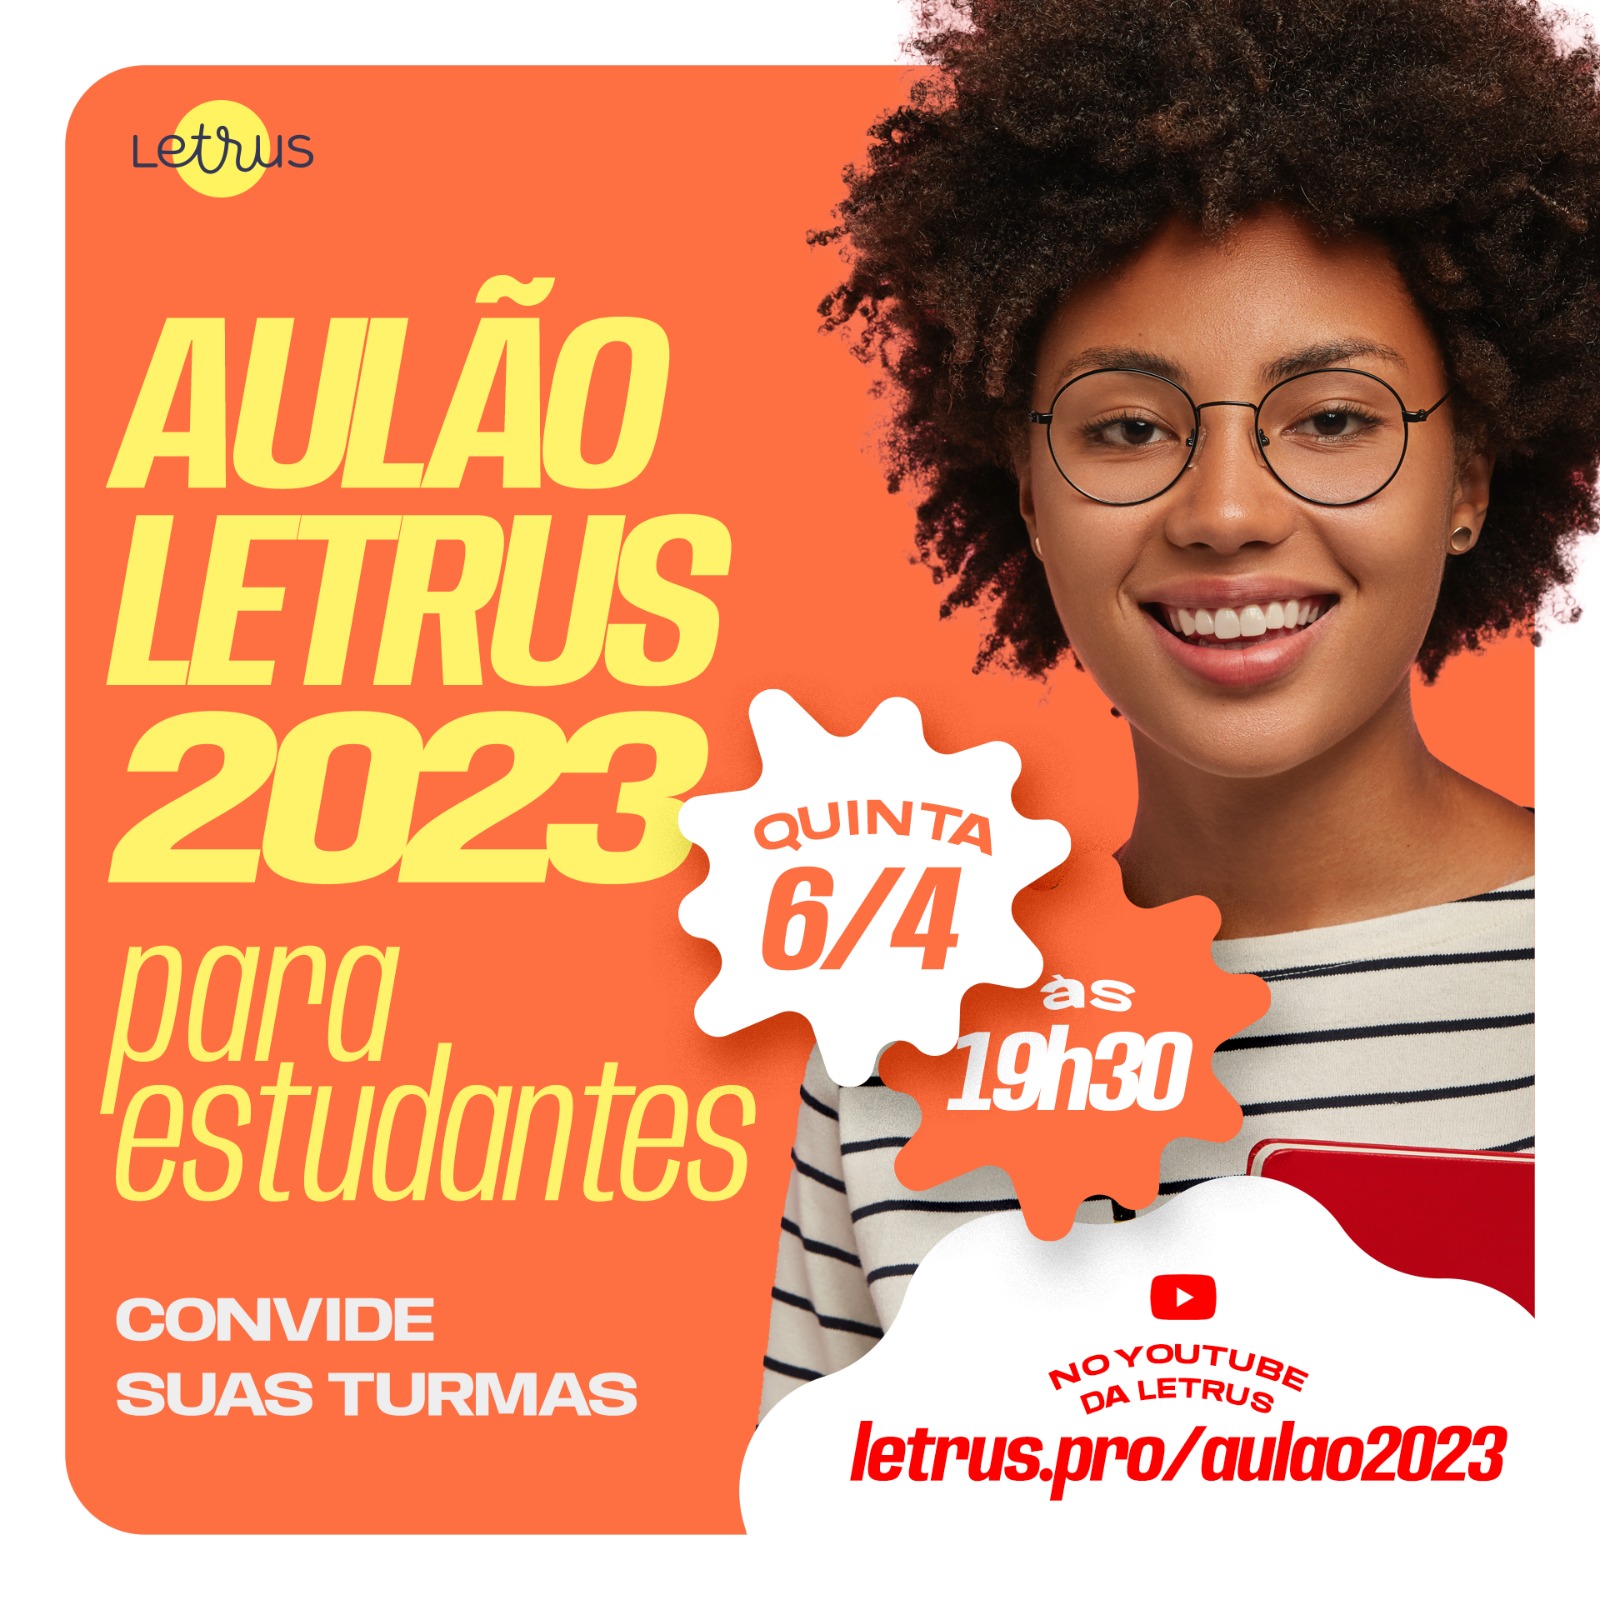 REDAÇÃO 900+ ENEM 2022 - AULÃO XEQUE-MATE - Ellen e Luzia - Aprendi com  ElaS2